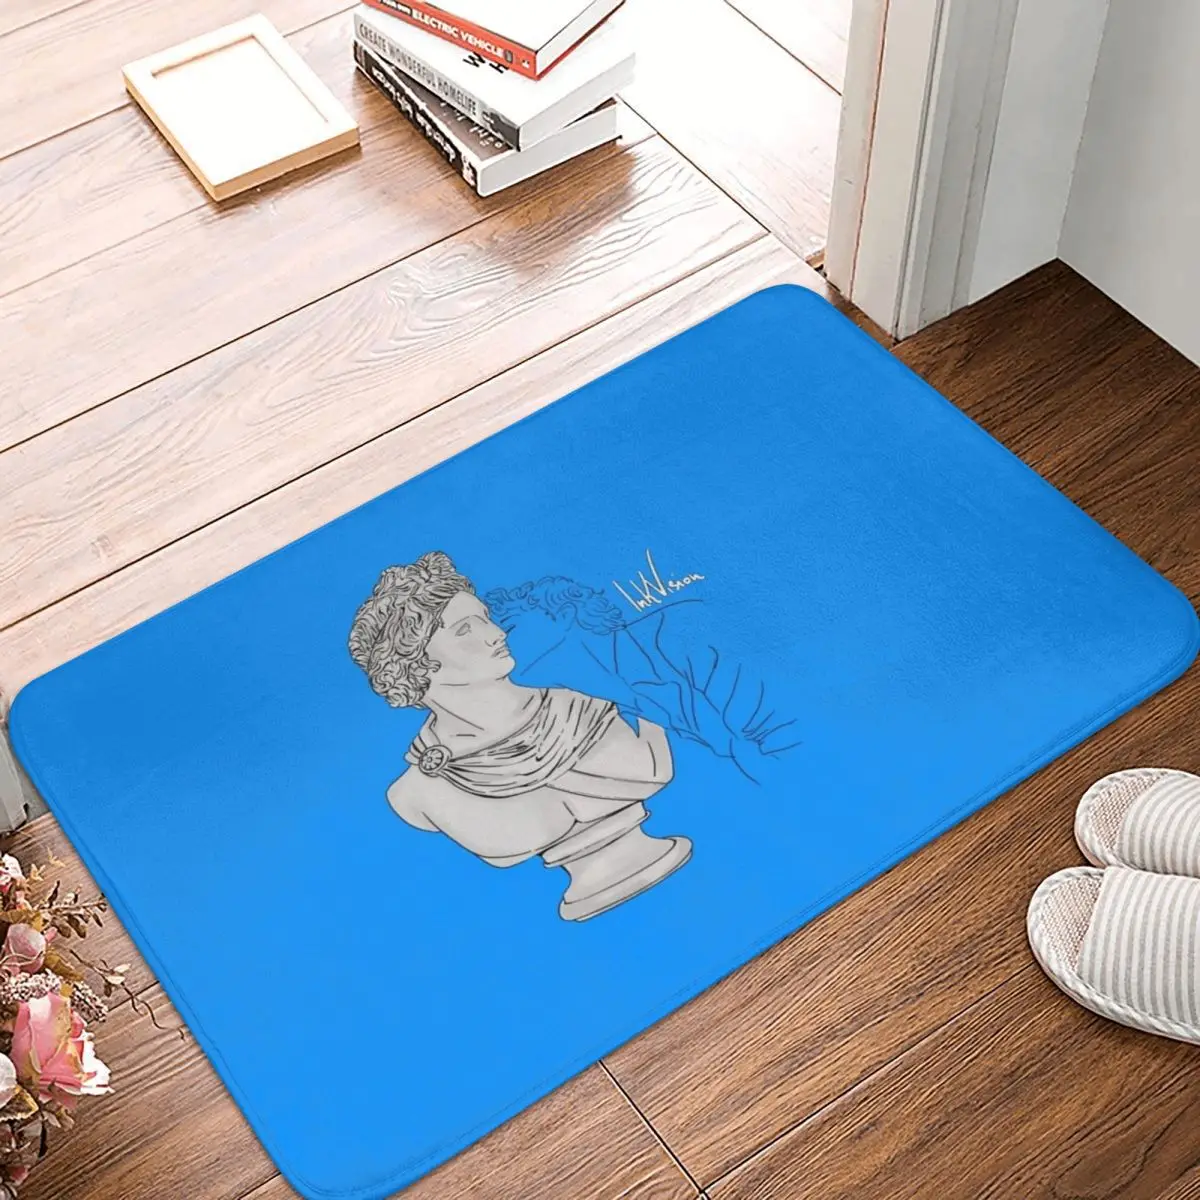 

Kiss-Blue коврик у двери ванной греческая мифология ковер Декор вход гостиная домашняя кухня спальня прочный прикроватный коврик для ванной